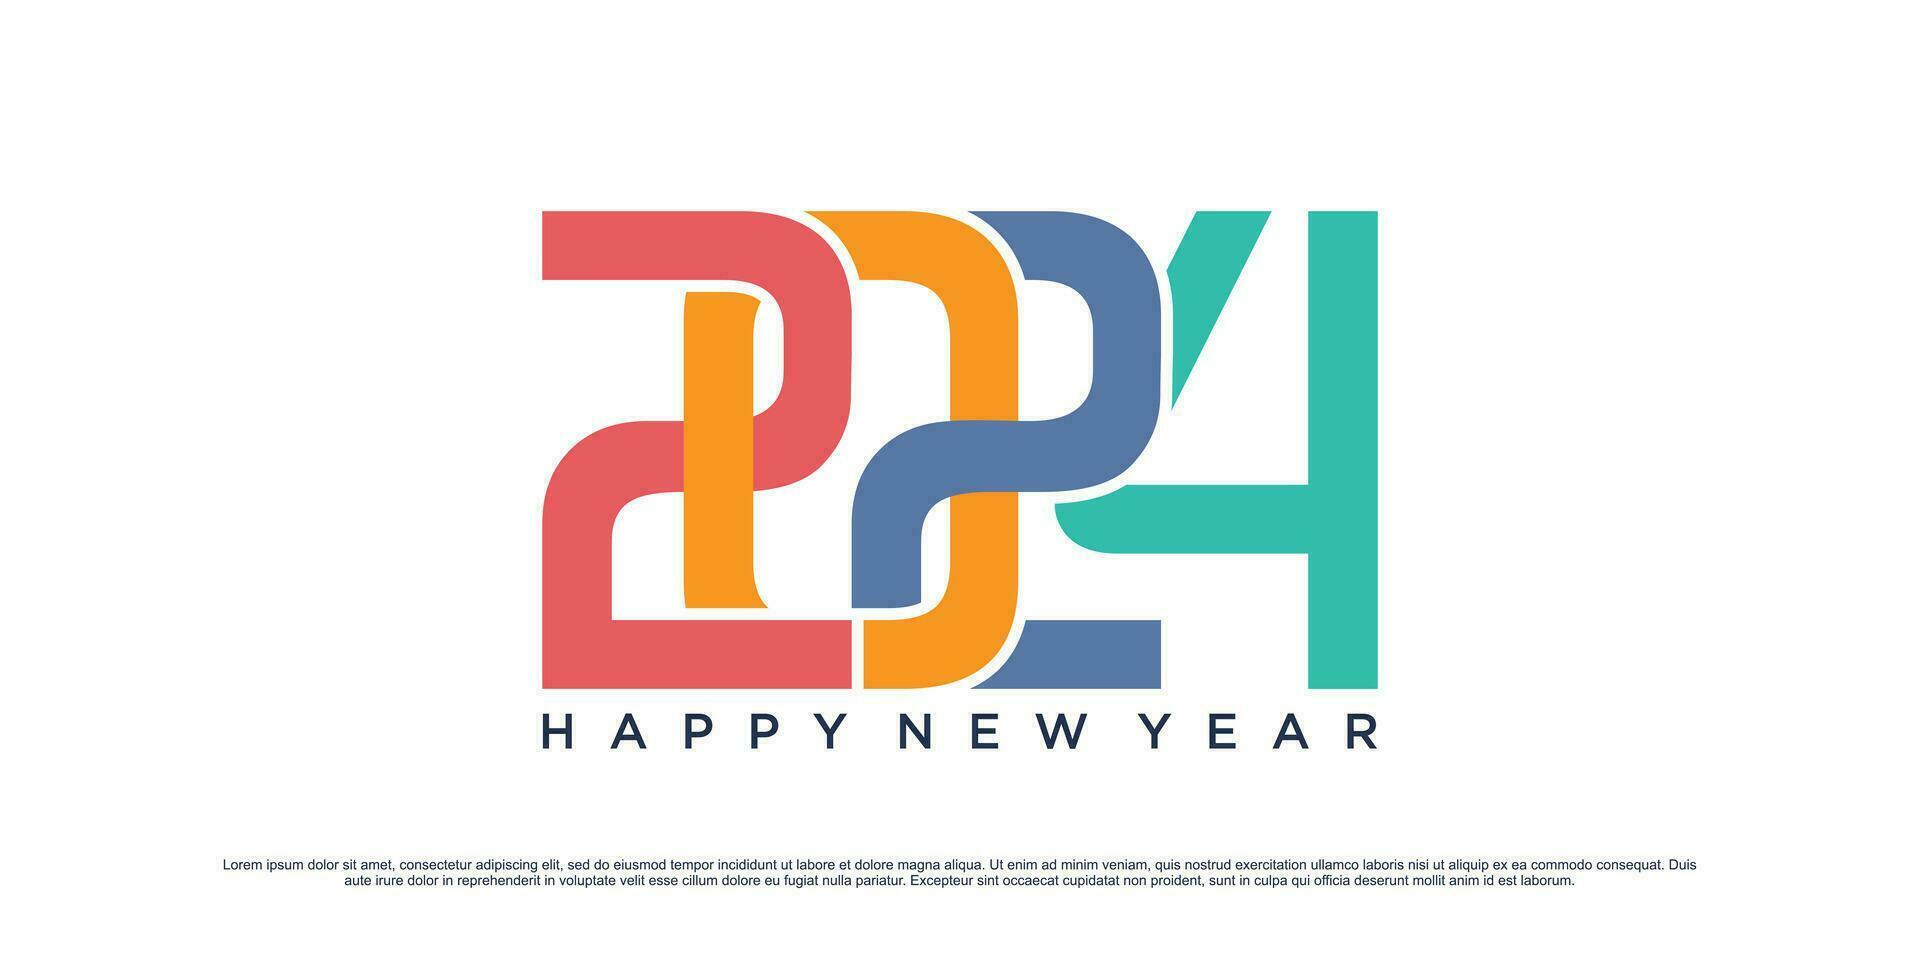 2024 gelukkig nieuw jaar logo vector ontwerp met modern idee